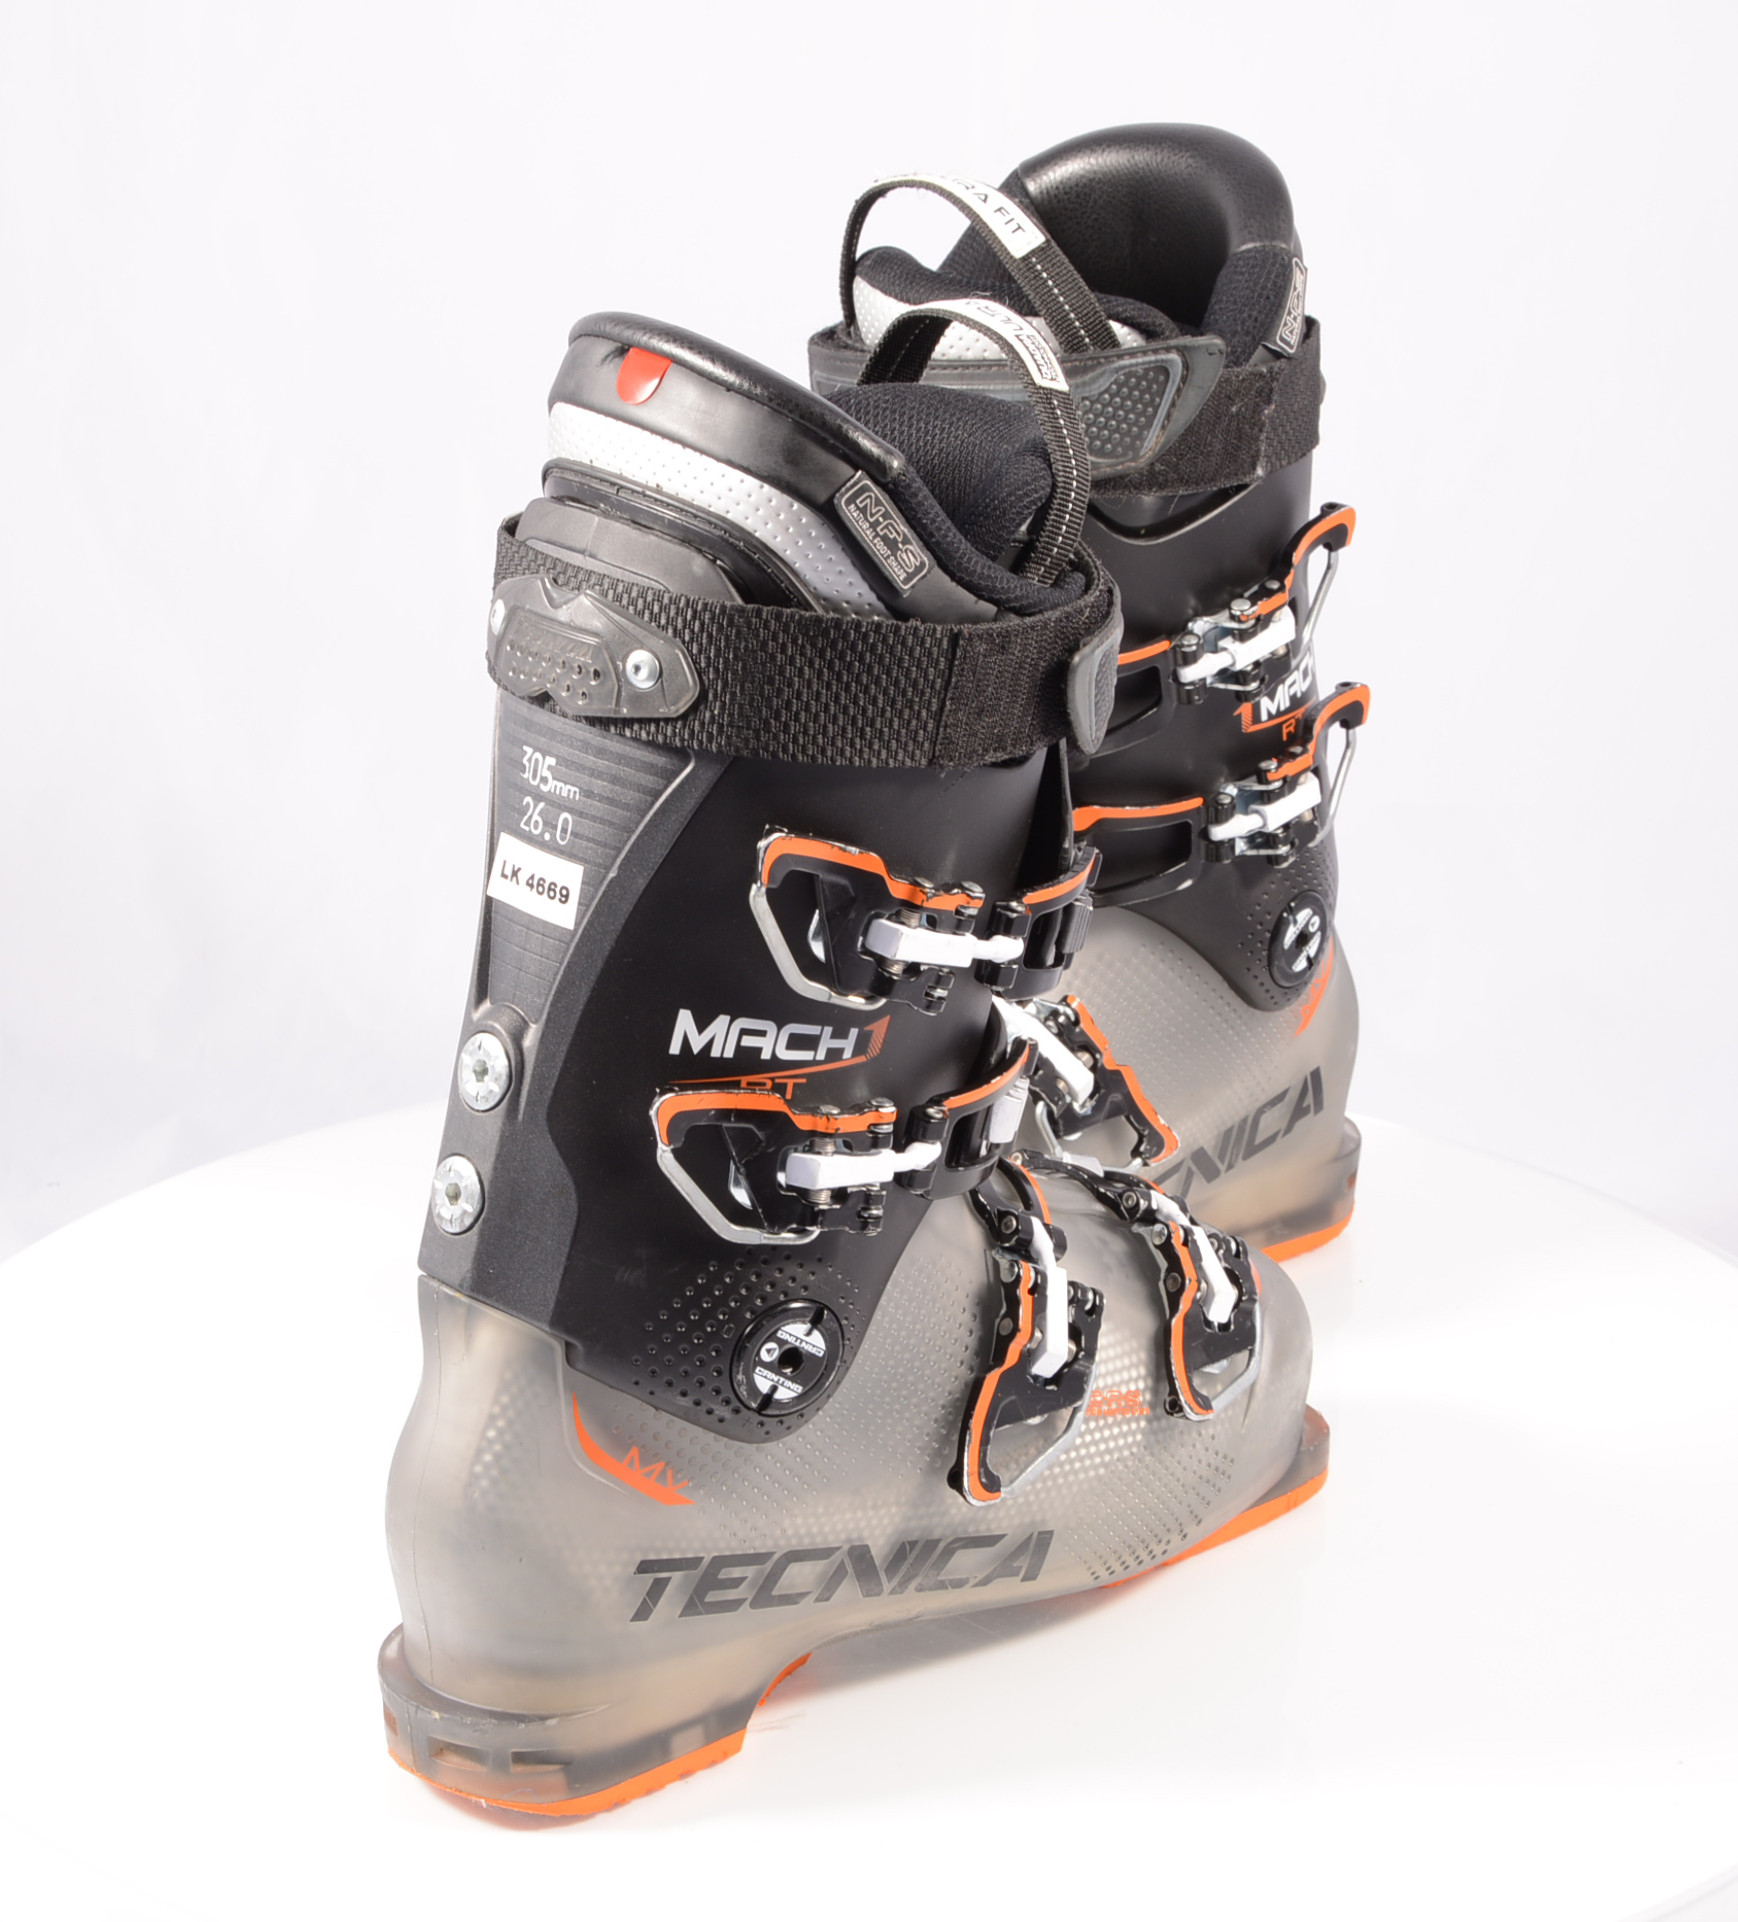 ski boots TECNICA 110 MV 2019, CAS, micro, canting - Mardosport.com